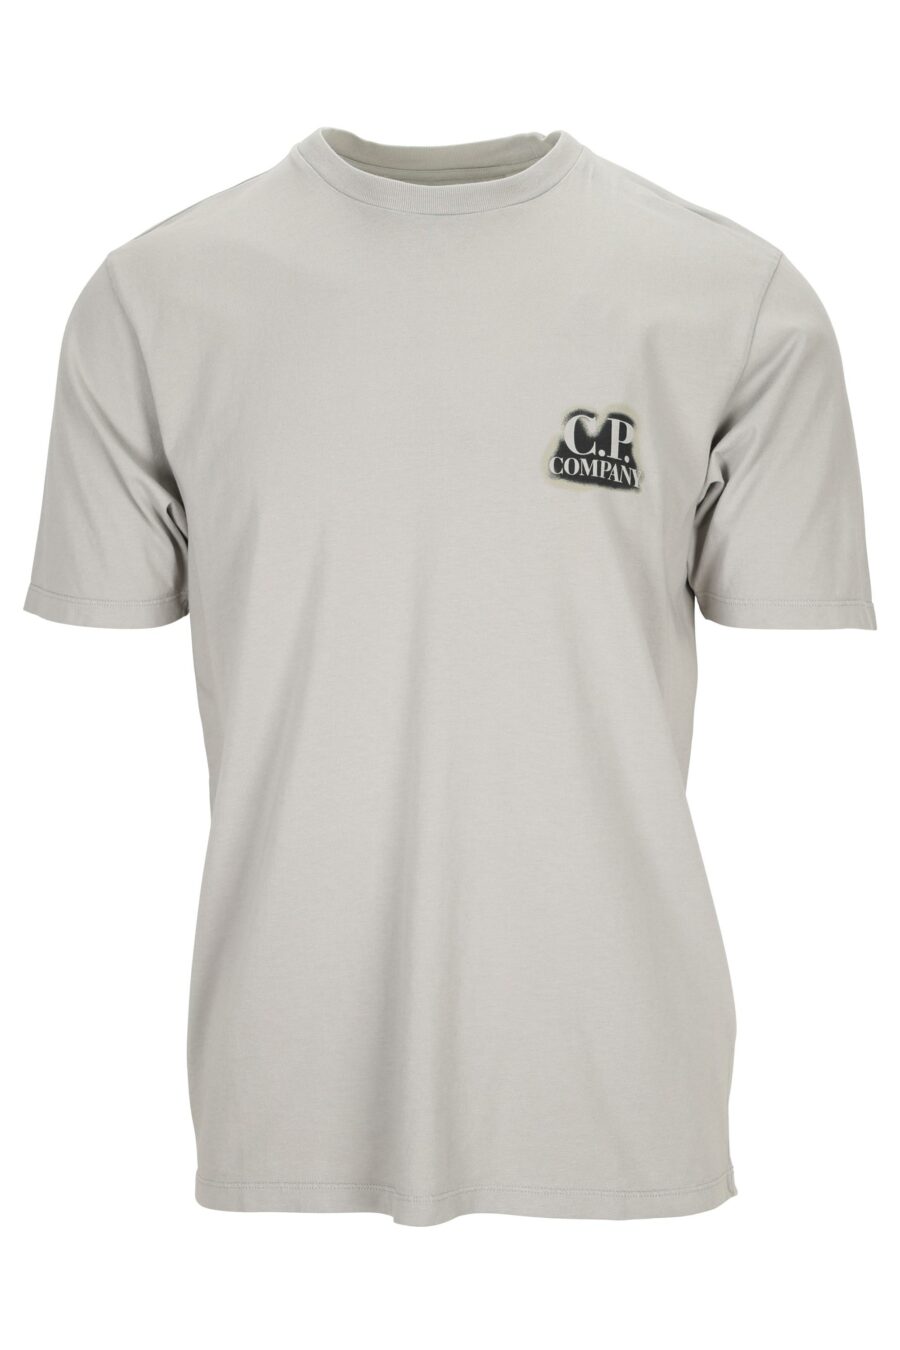 T-shirt gris avec minilogue "cp" brûlé - 7620943776409